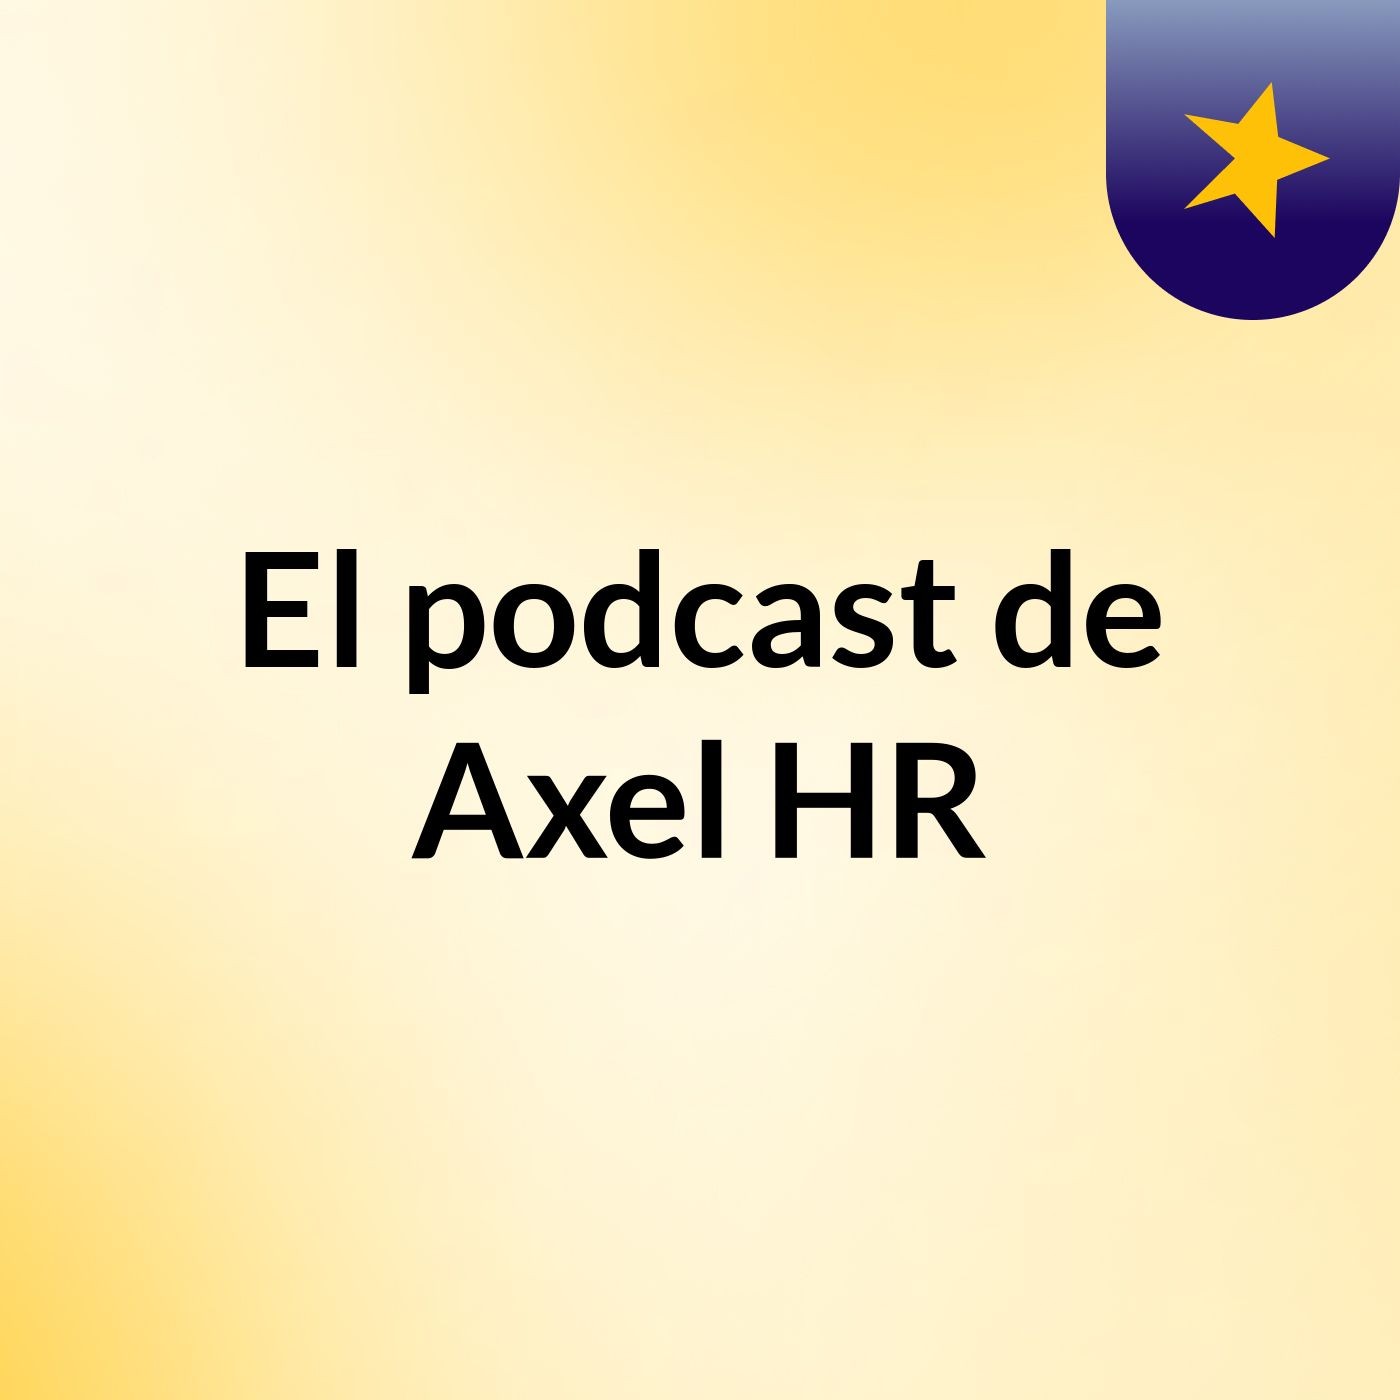 Episodio 3 - El podcast de Axel HR